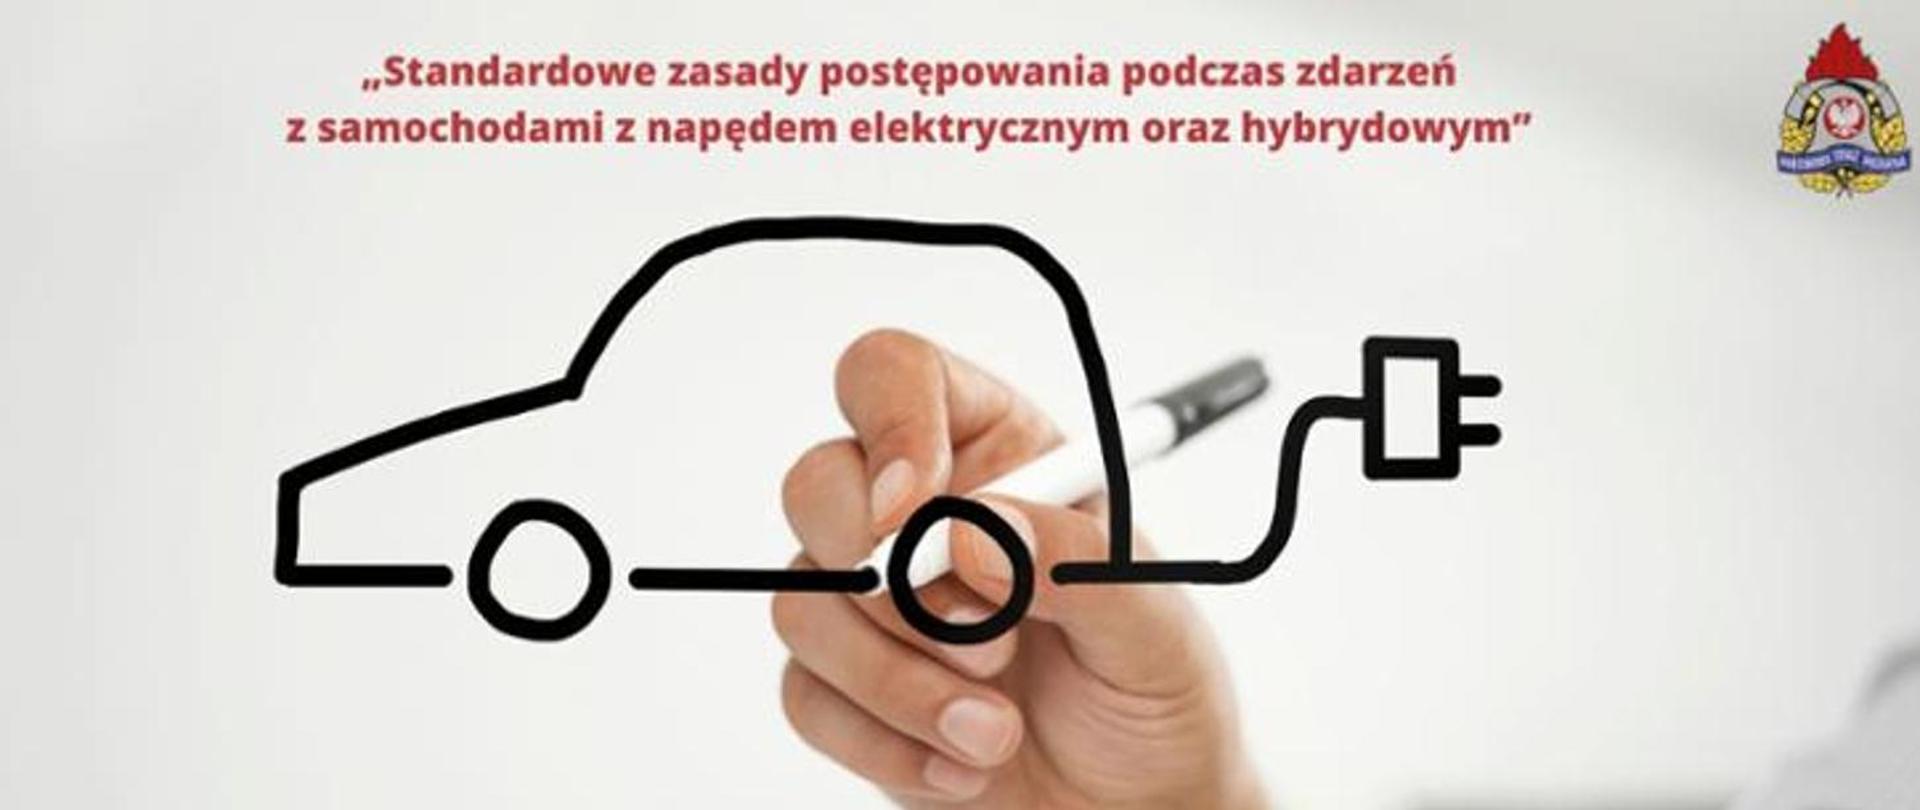 Ludzka ręka trzymająca marker rysuje kontur samochodu z kablem zakończony wtyczką elektryczną. Na górze czerwony napis Standardowe zasady postępowania podczas zdarzeń z samochodami z napędem elektrycznym oraz hybrydowym z prawej górnej strony logo PSP